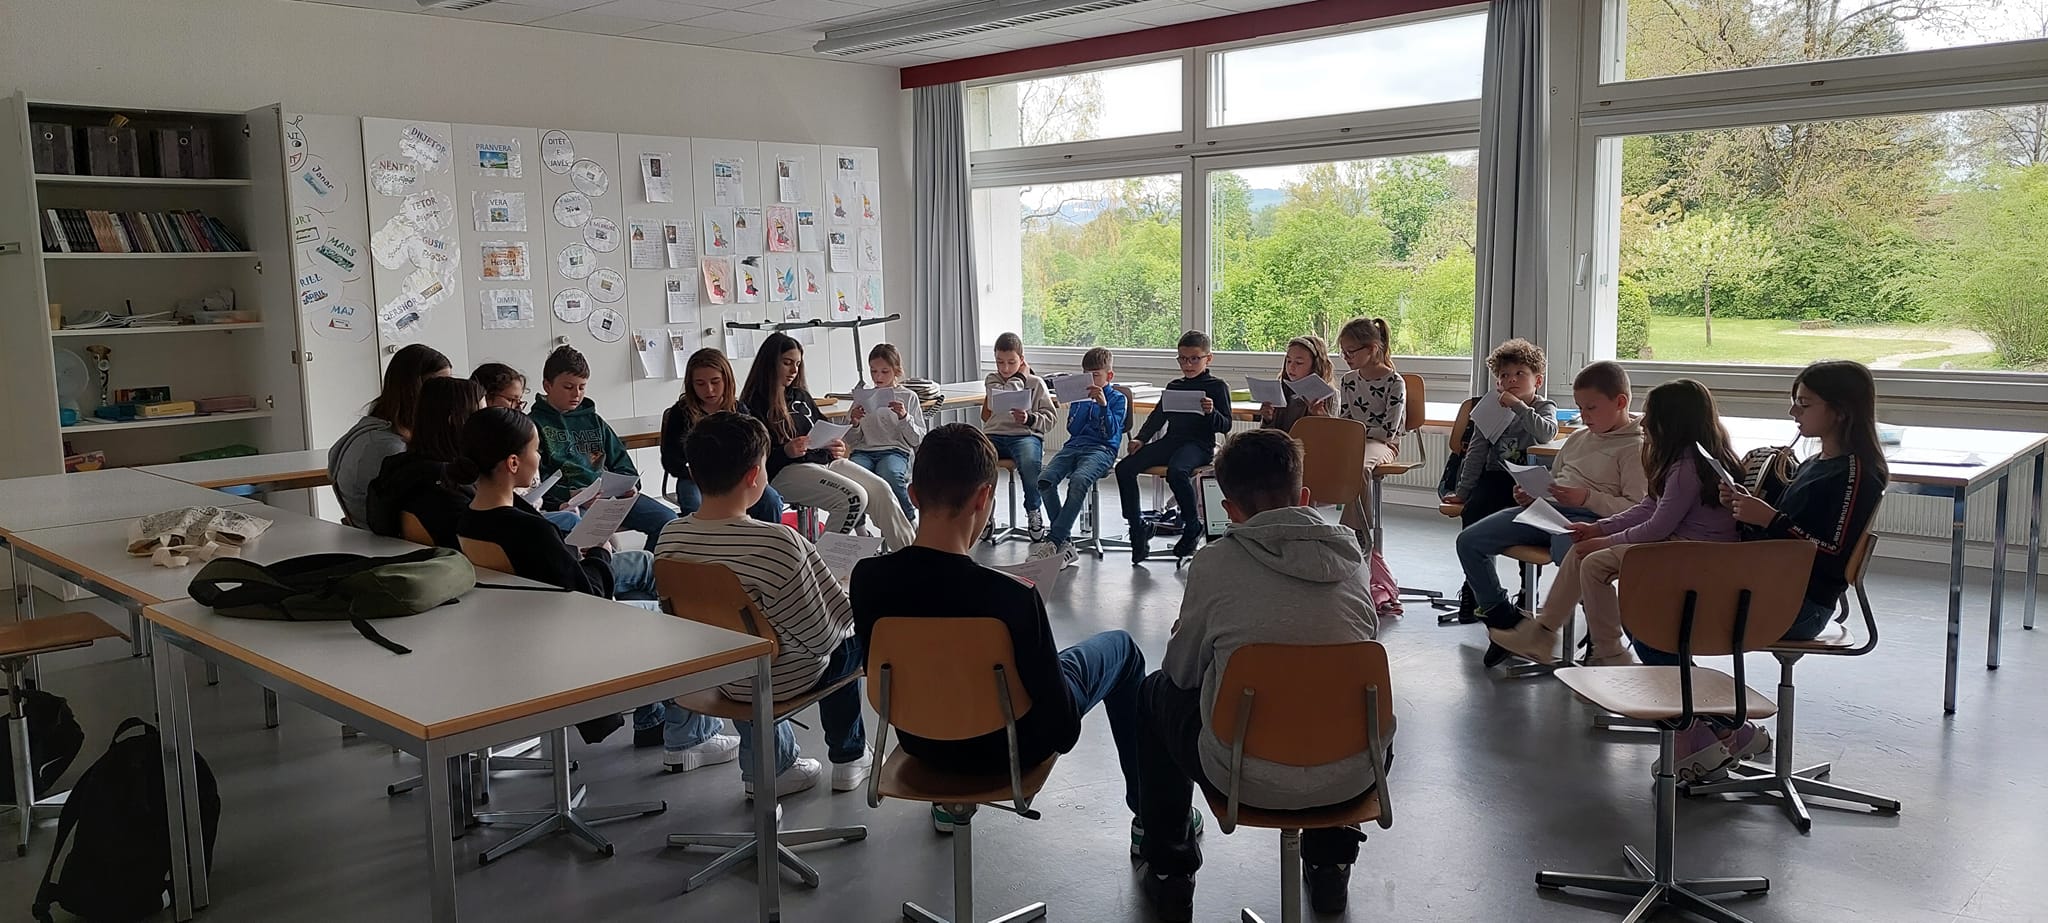 Pas pushimit pranveror  rinis mësimi plotësues i gjuhës shqipe në shkollën Ostermundigen Bern